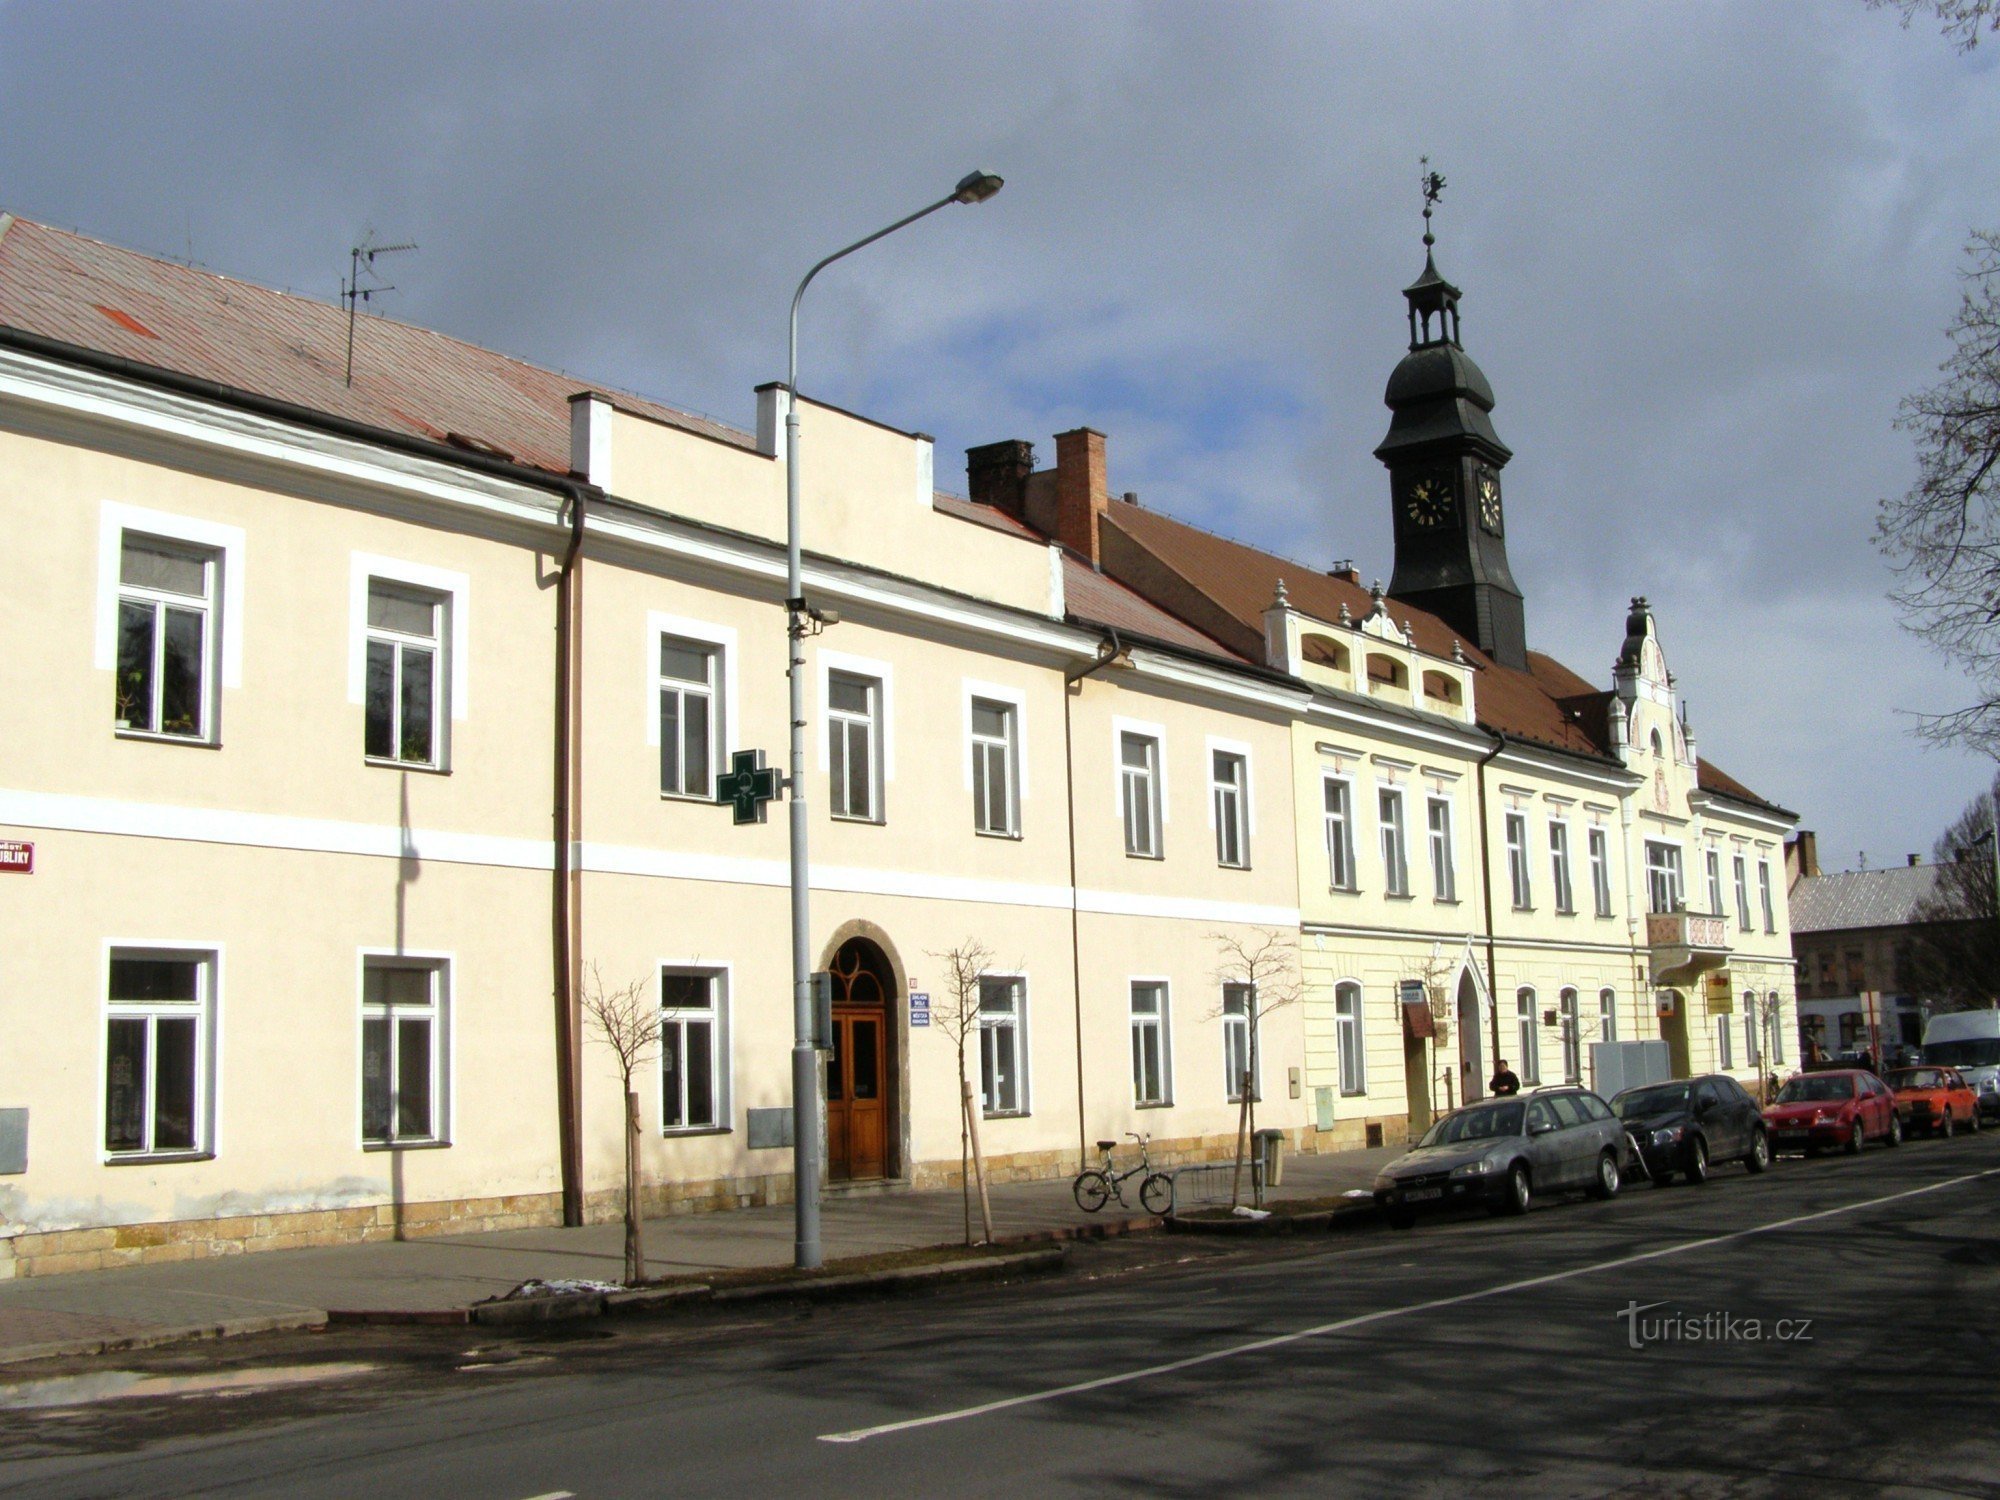 Stad van Králové